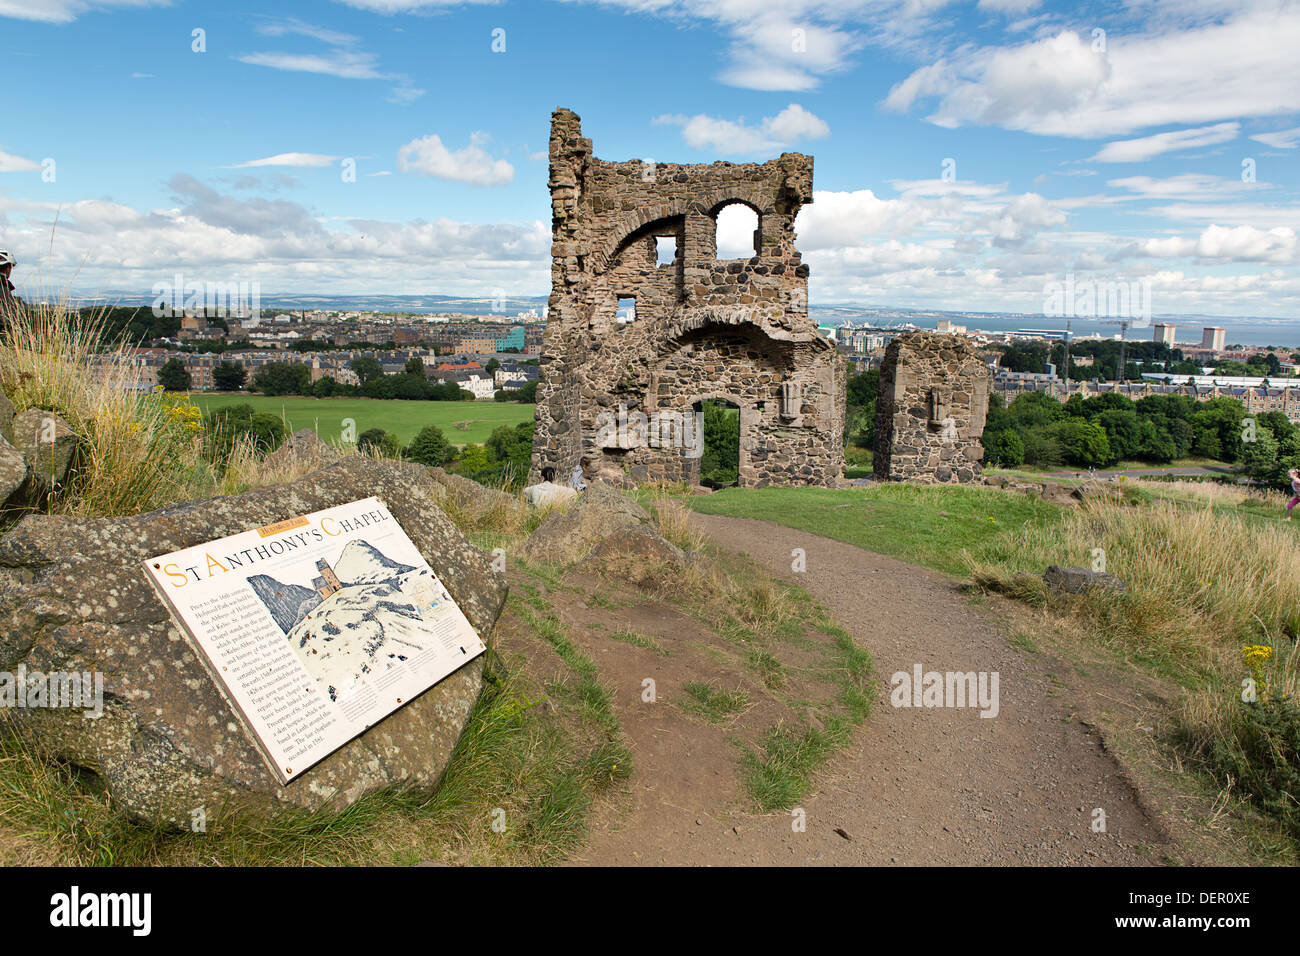 Die Ruinen der Kapelle St Anthony auf Arthurs Seat Hügel.  Arthurs Seat liegt am Rande von Edinburgh. Schottland. Stockfoto